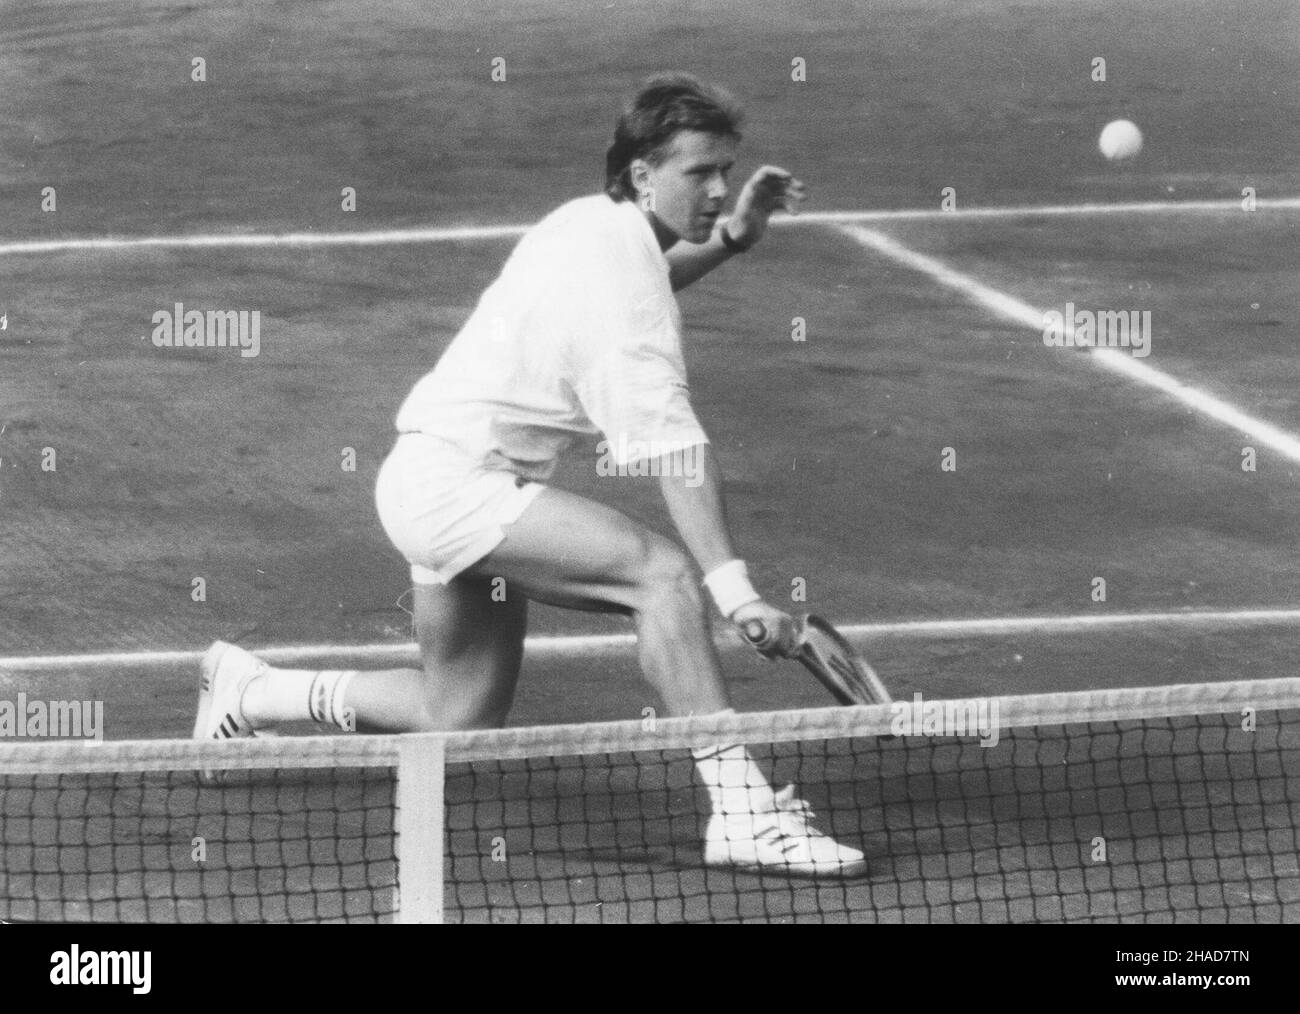 Warszawa, 1989. Puchar Davisa. Polska -Grecia. Tenista Wojciech Kowalski . mgal PAP/CAF/Ireneusz Radkiewicz Foto de stock